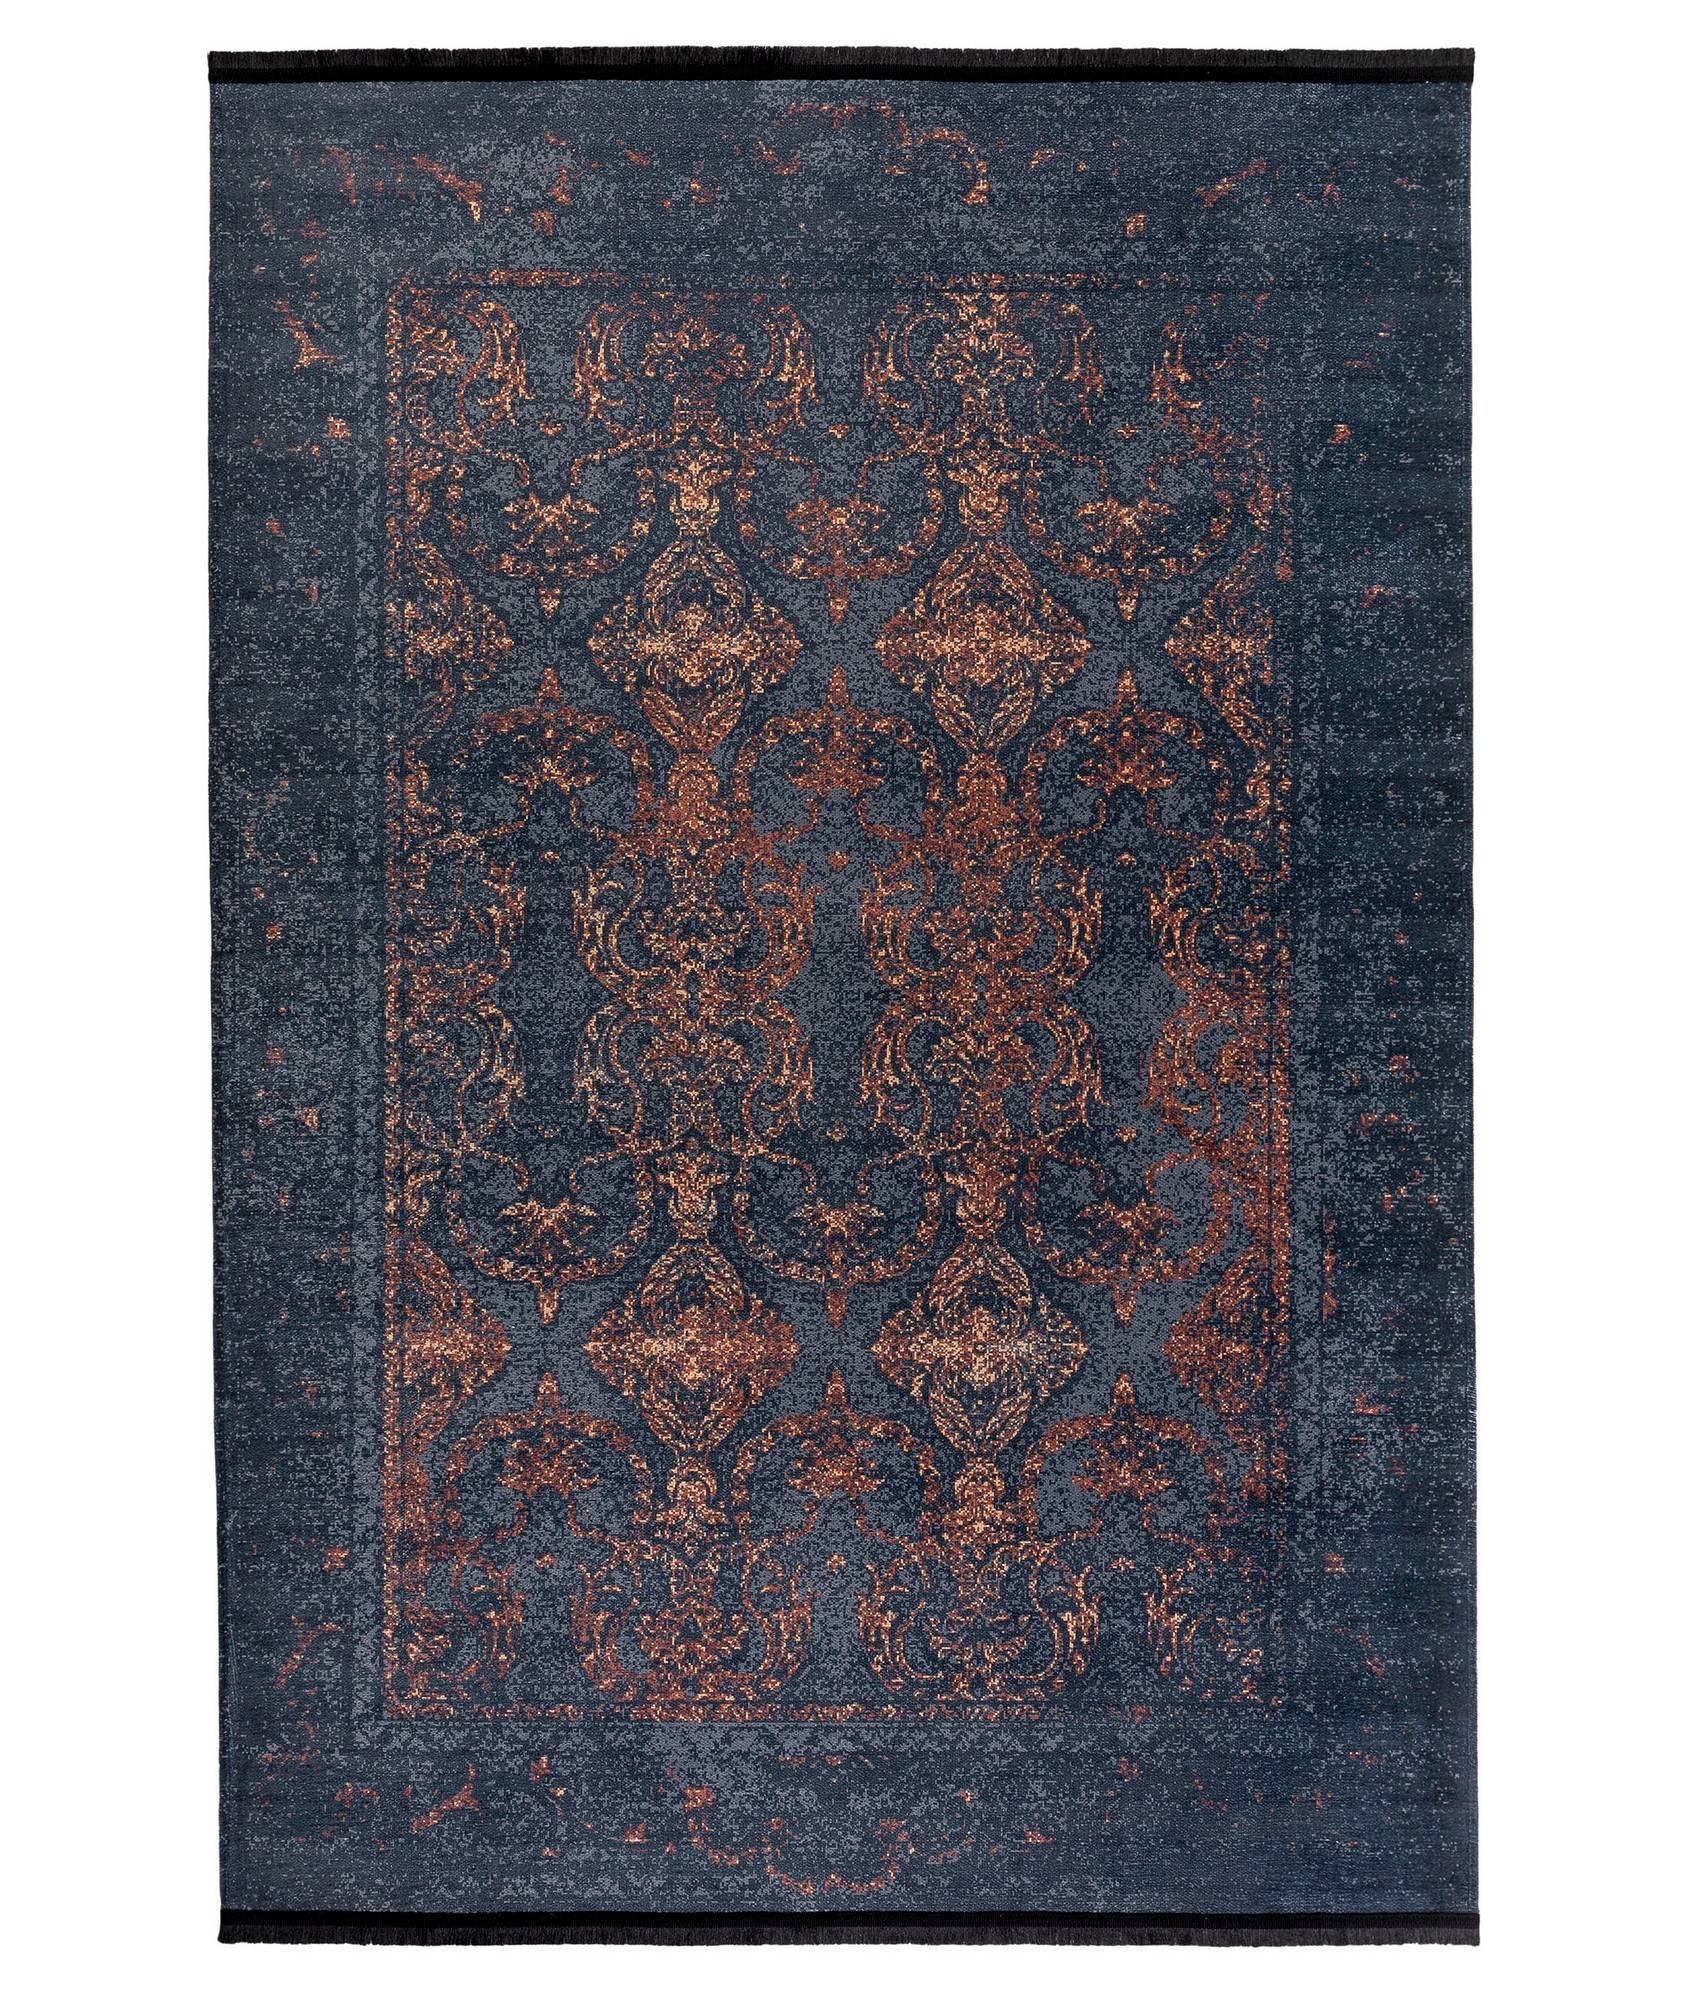 Hadorn Teppich 160x230cm Viktorianisches Muster Orange und Schwarz